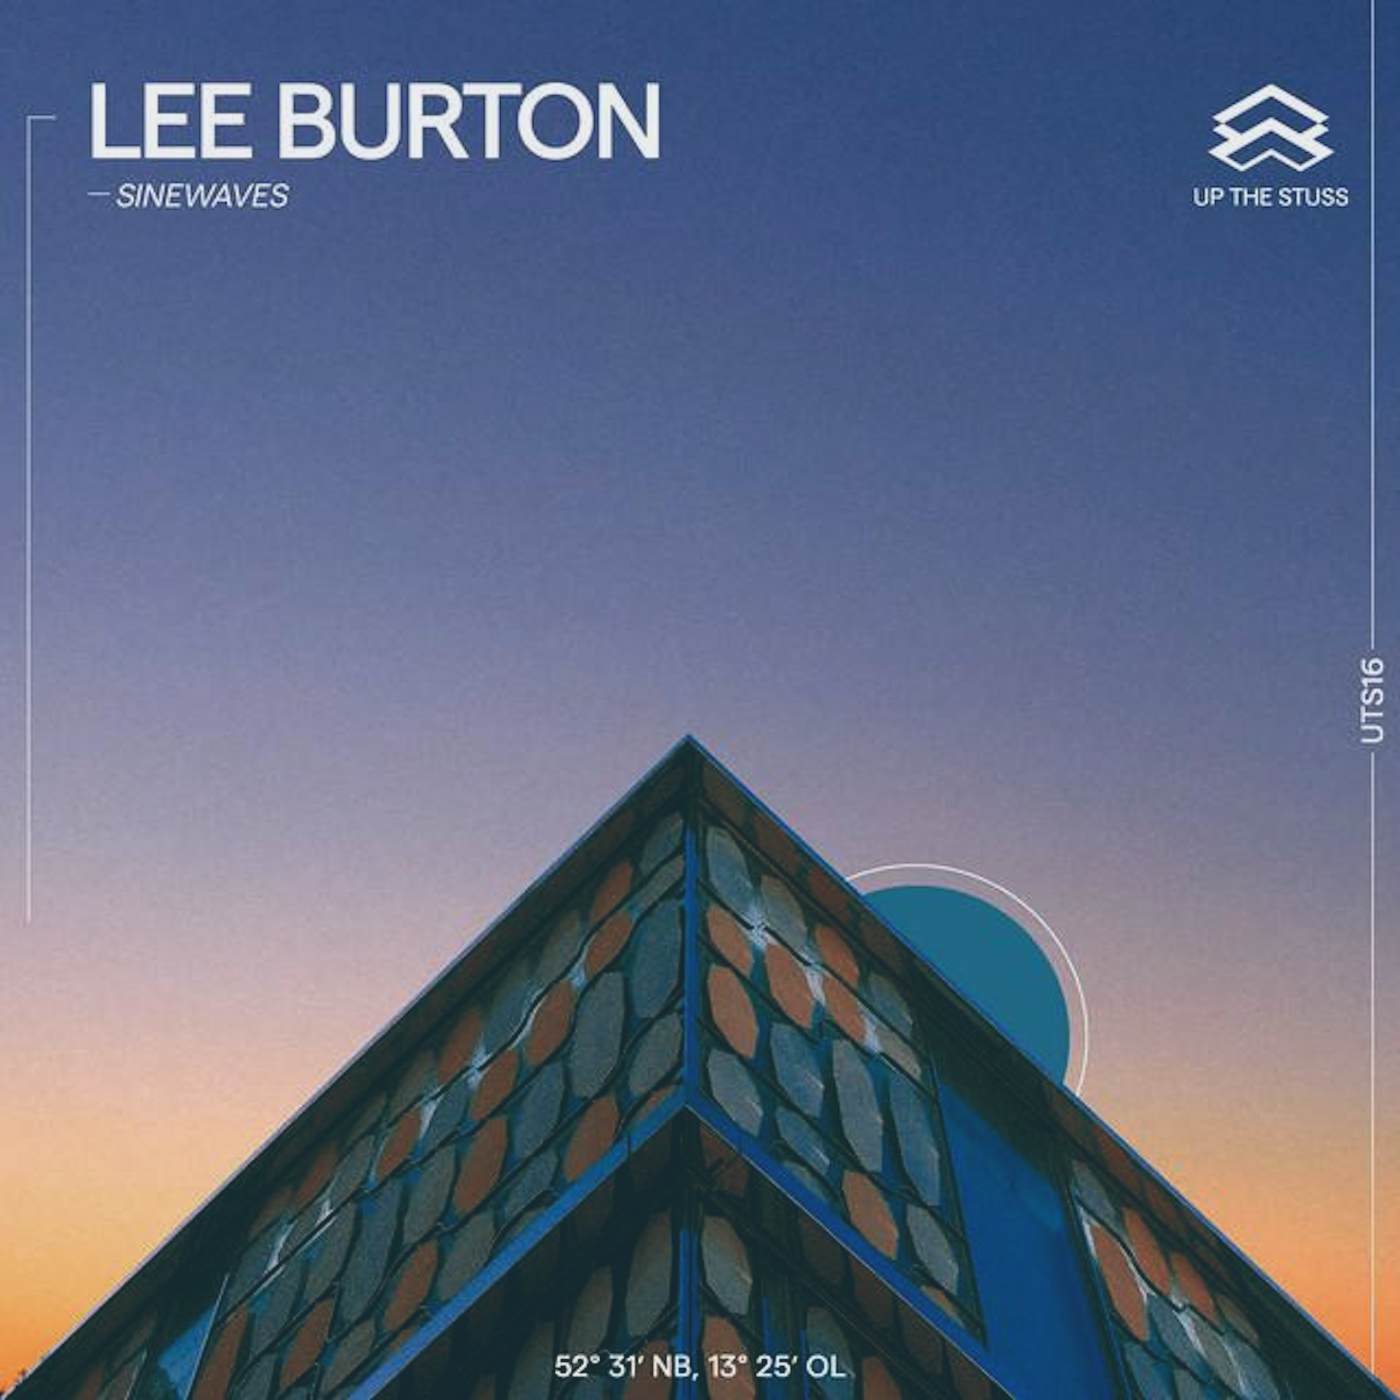 Lee Burton